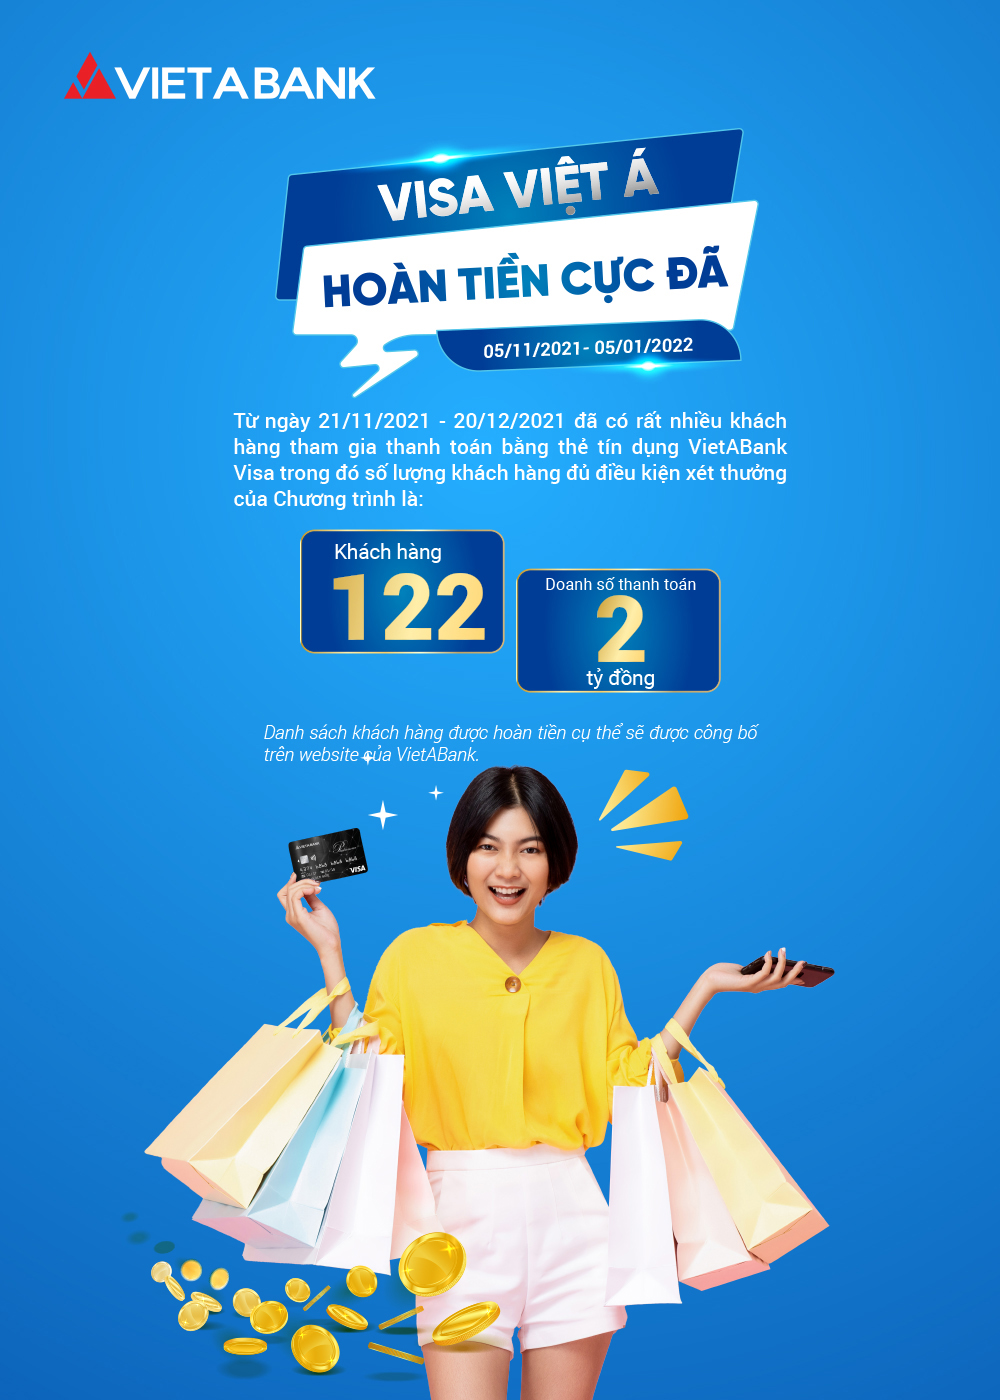 Kết quả đợt 2 Chương trình "Visa Việt Á - Hoàn tiền cực đã" (Từ 21/11/2021 đến ngày 20/12/2021)